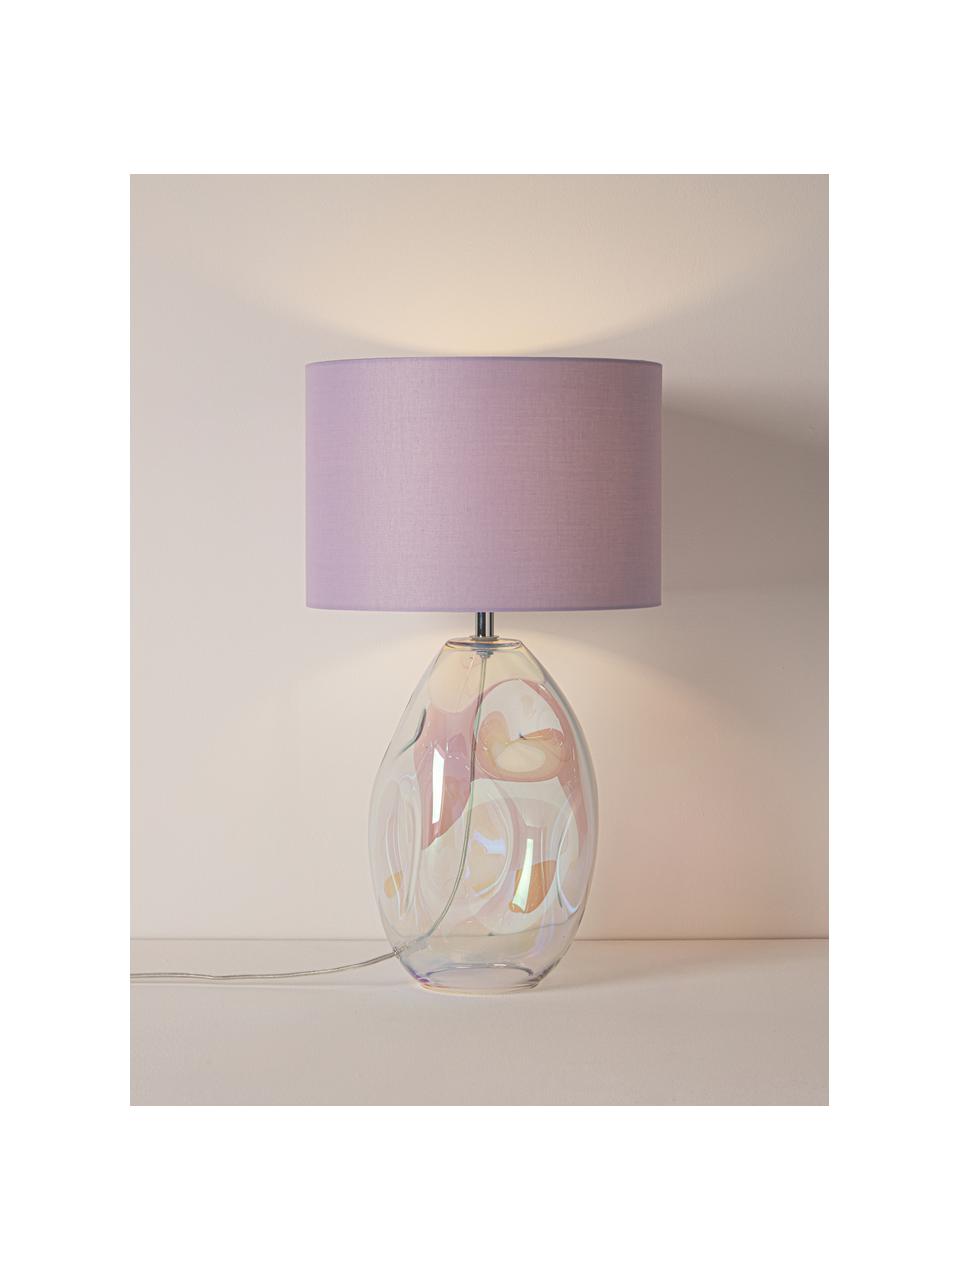 Lampada da tavolo grande con base in vetro iridescente Leia, Paralume: tessuto, Base della lampada: vetro, Lilla, trasparente, iridescente, Ø 30 x Alt. 53 cm